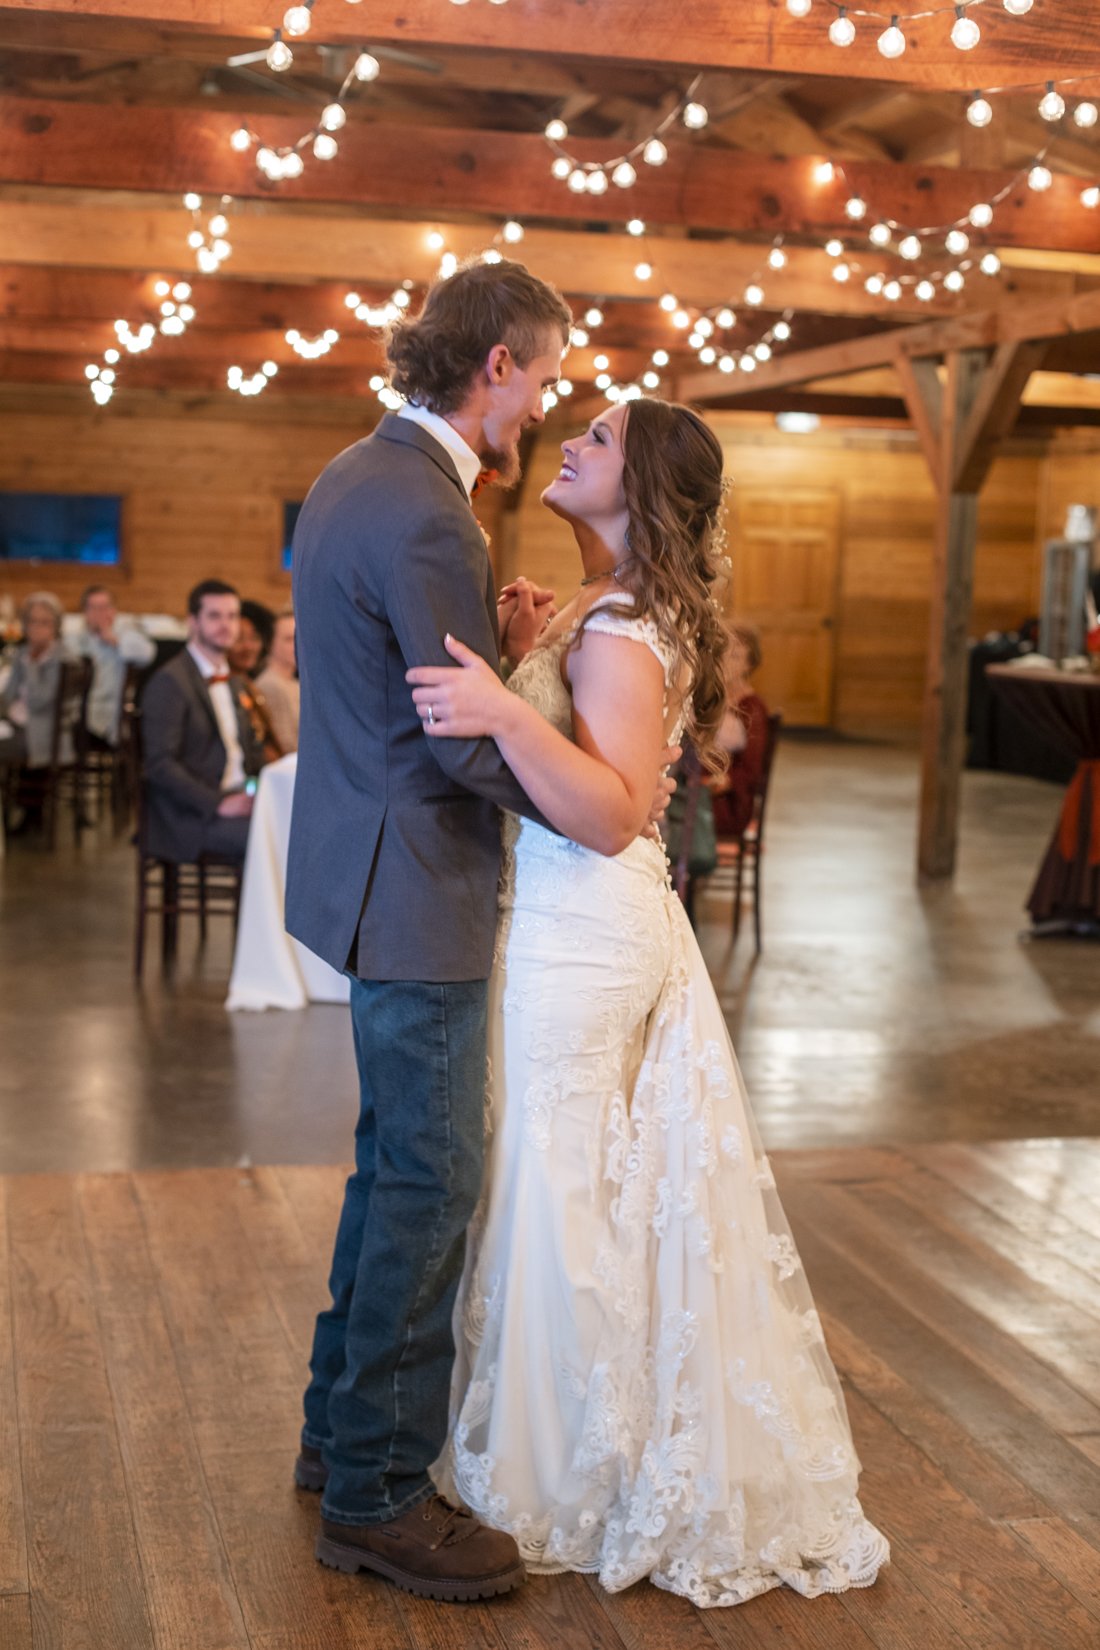 Tori and Hunter Wedding at Taylor Ranch Asheville NC- Photos by Studio Misha-102.jpg